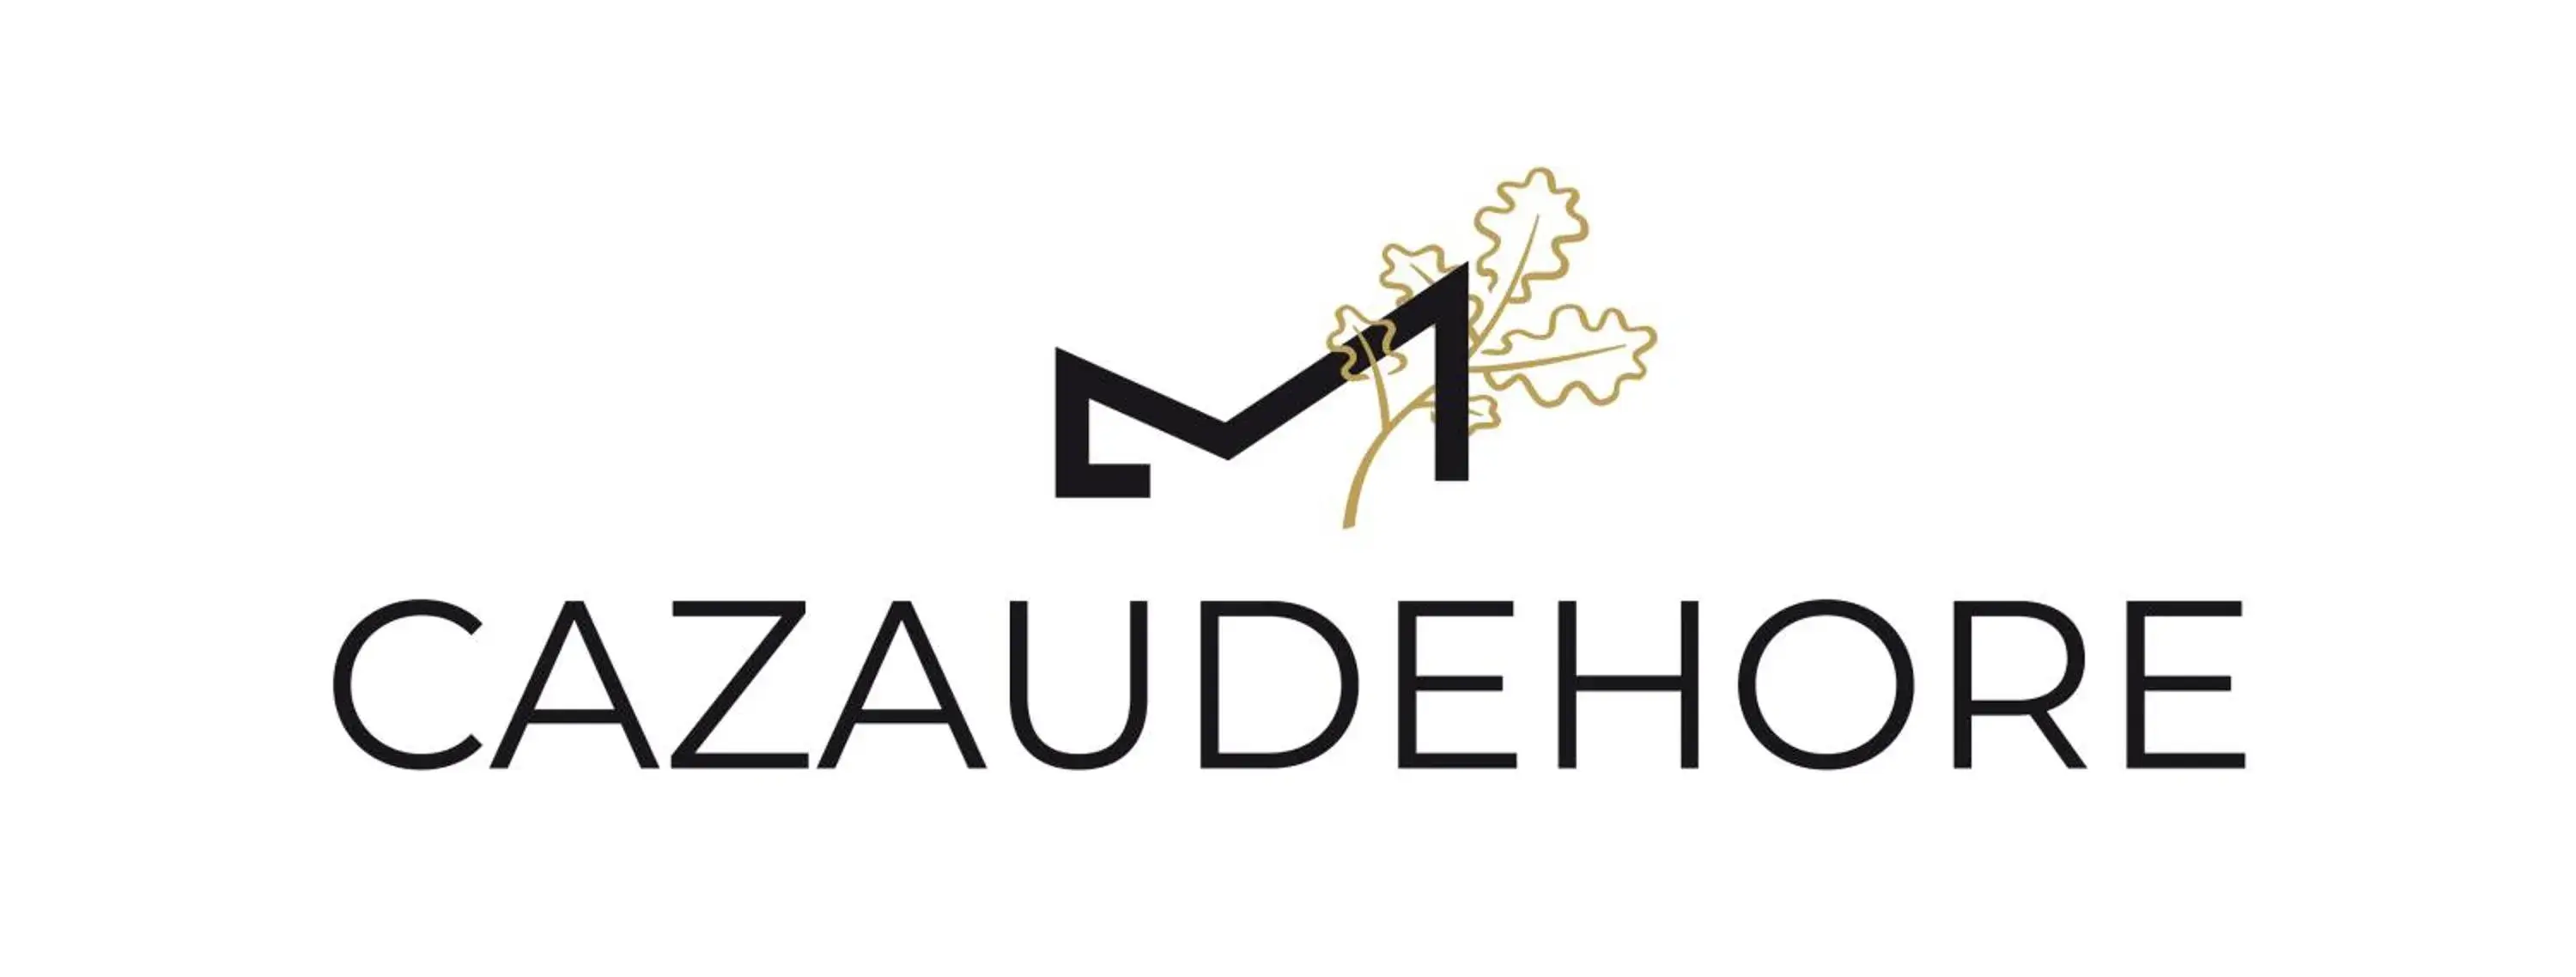 Property logo or sign in Cazaudehore, hôtel de charme au vert